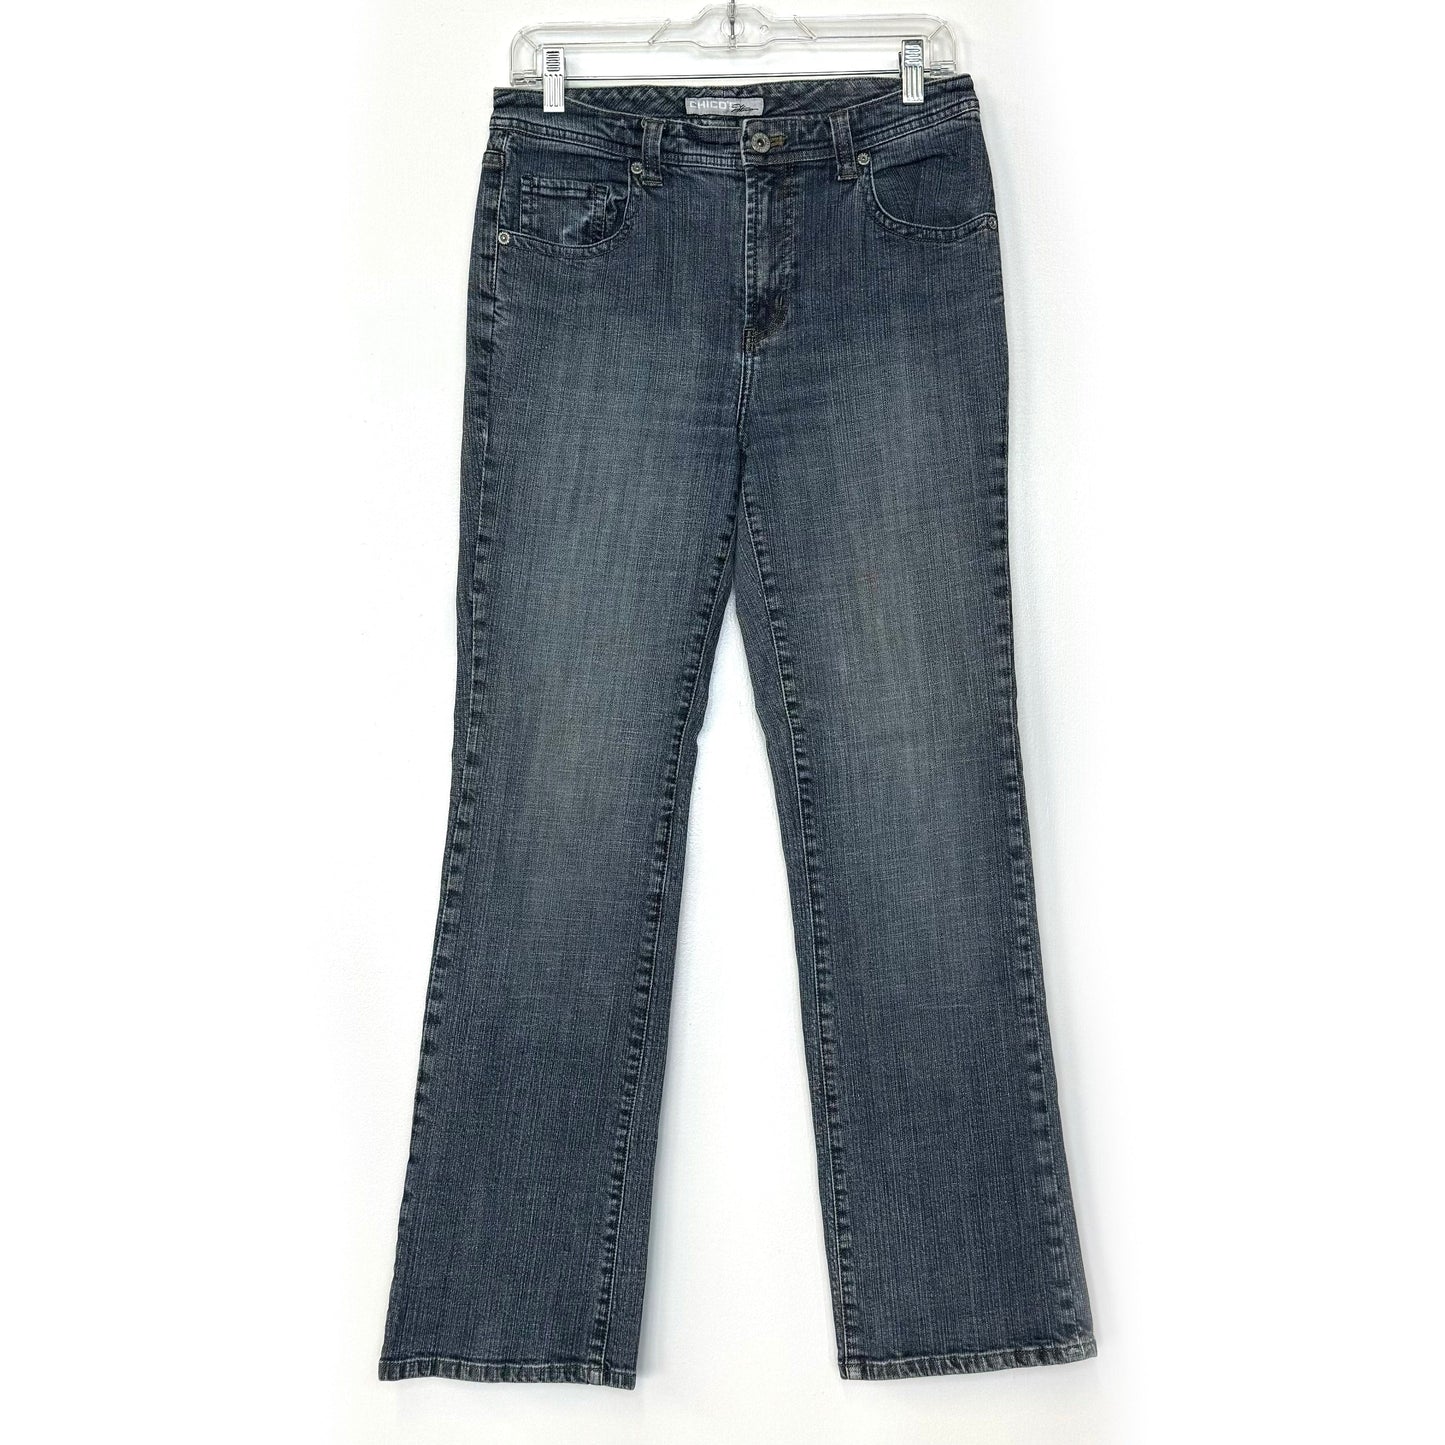 Chicos Platinum | Womens Classic Wash Denim Jeans | Color: Blue | Size: 0 Reg | EUC